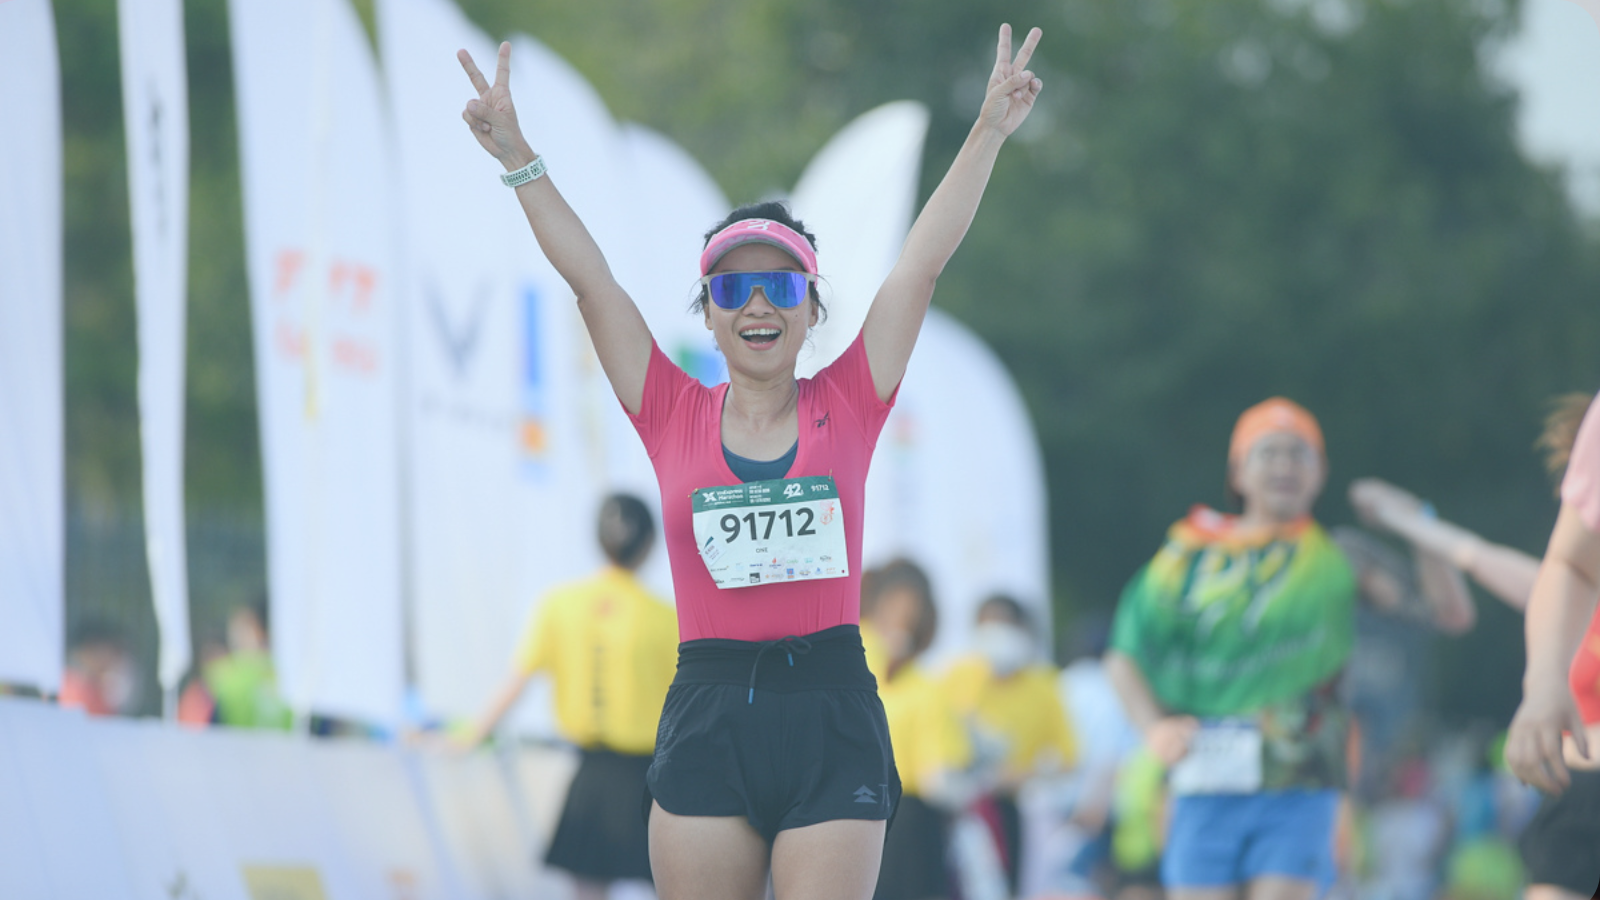 7 Điều Bạn Cần Chú Ý Khi Chuẩn Bị Tham Gia Chạy Marathon